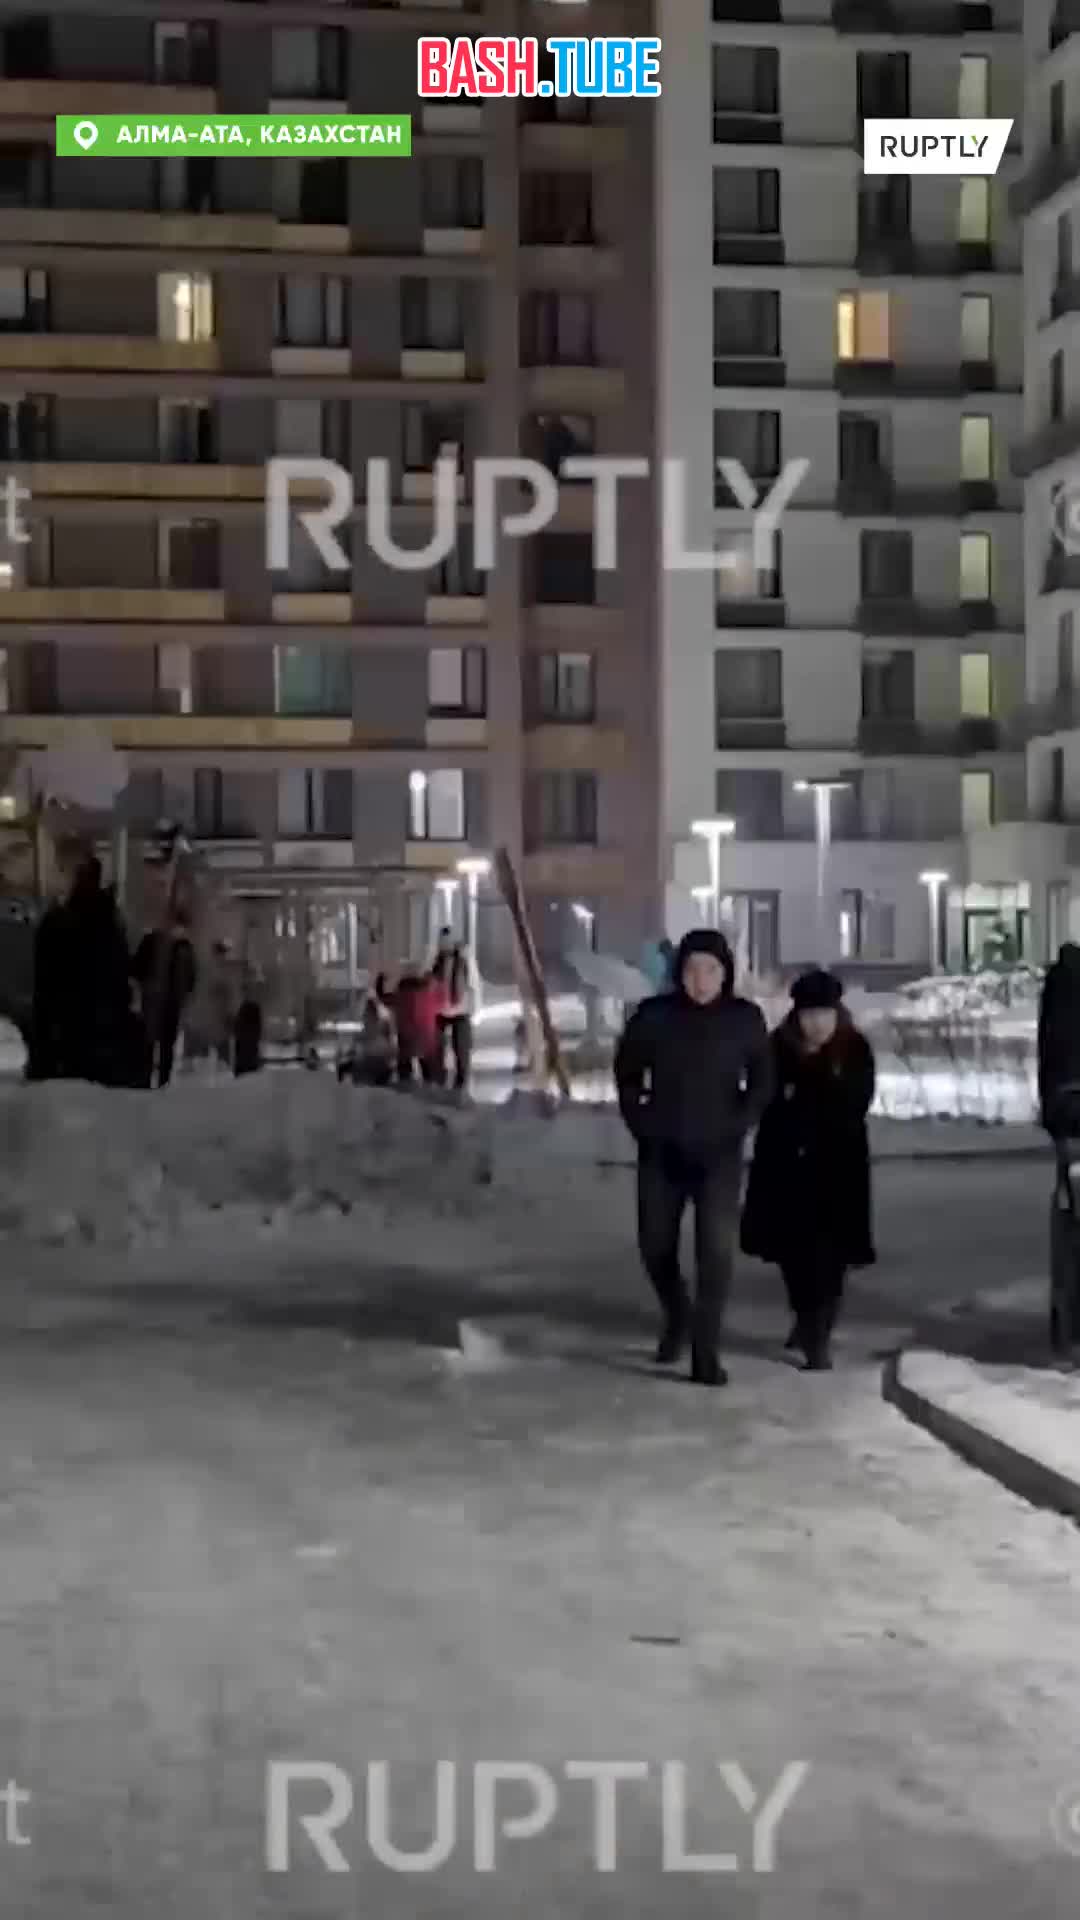  По меньшей мере 44 человека пострадали в результате землетрясения в Алма-Ате